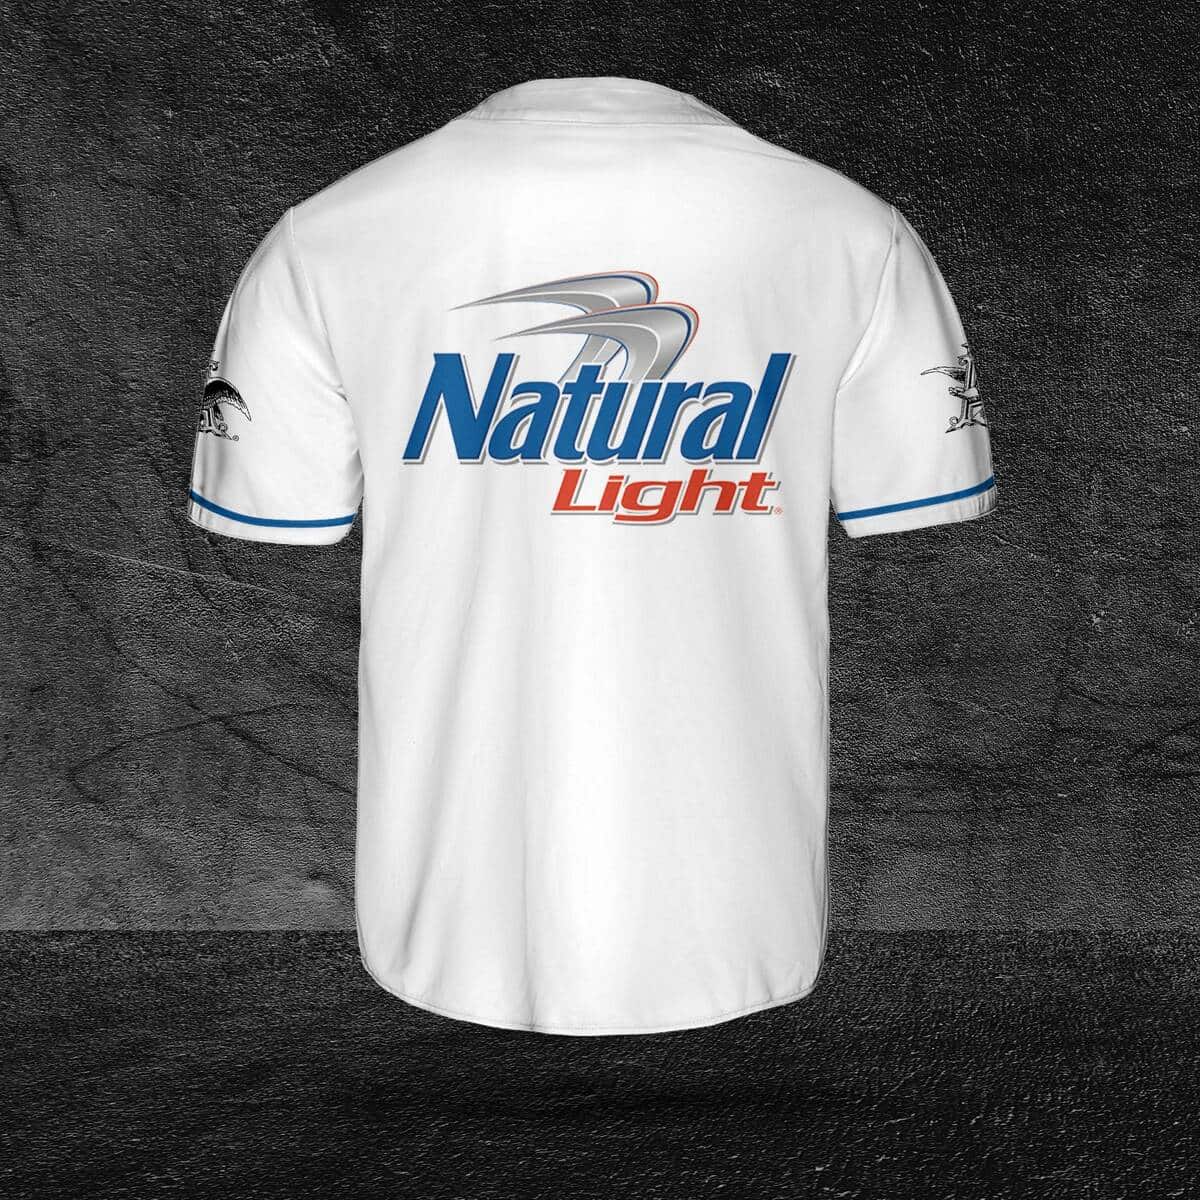 Basic White Natural Light Baseball Jersey Gift For Beer Drinkers